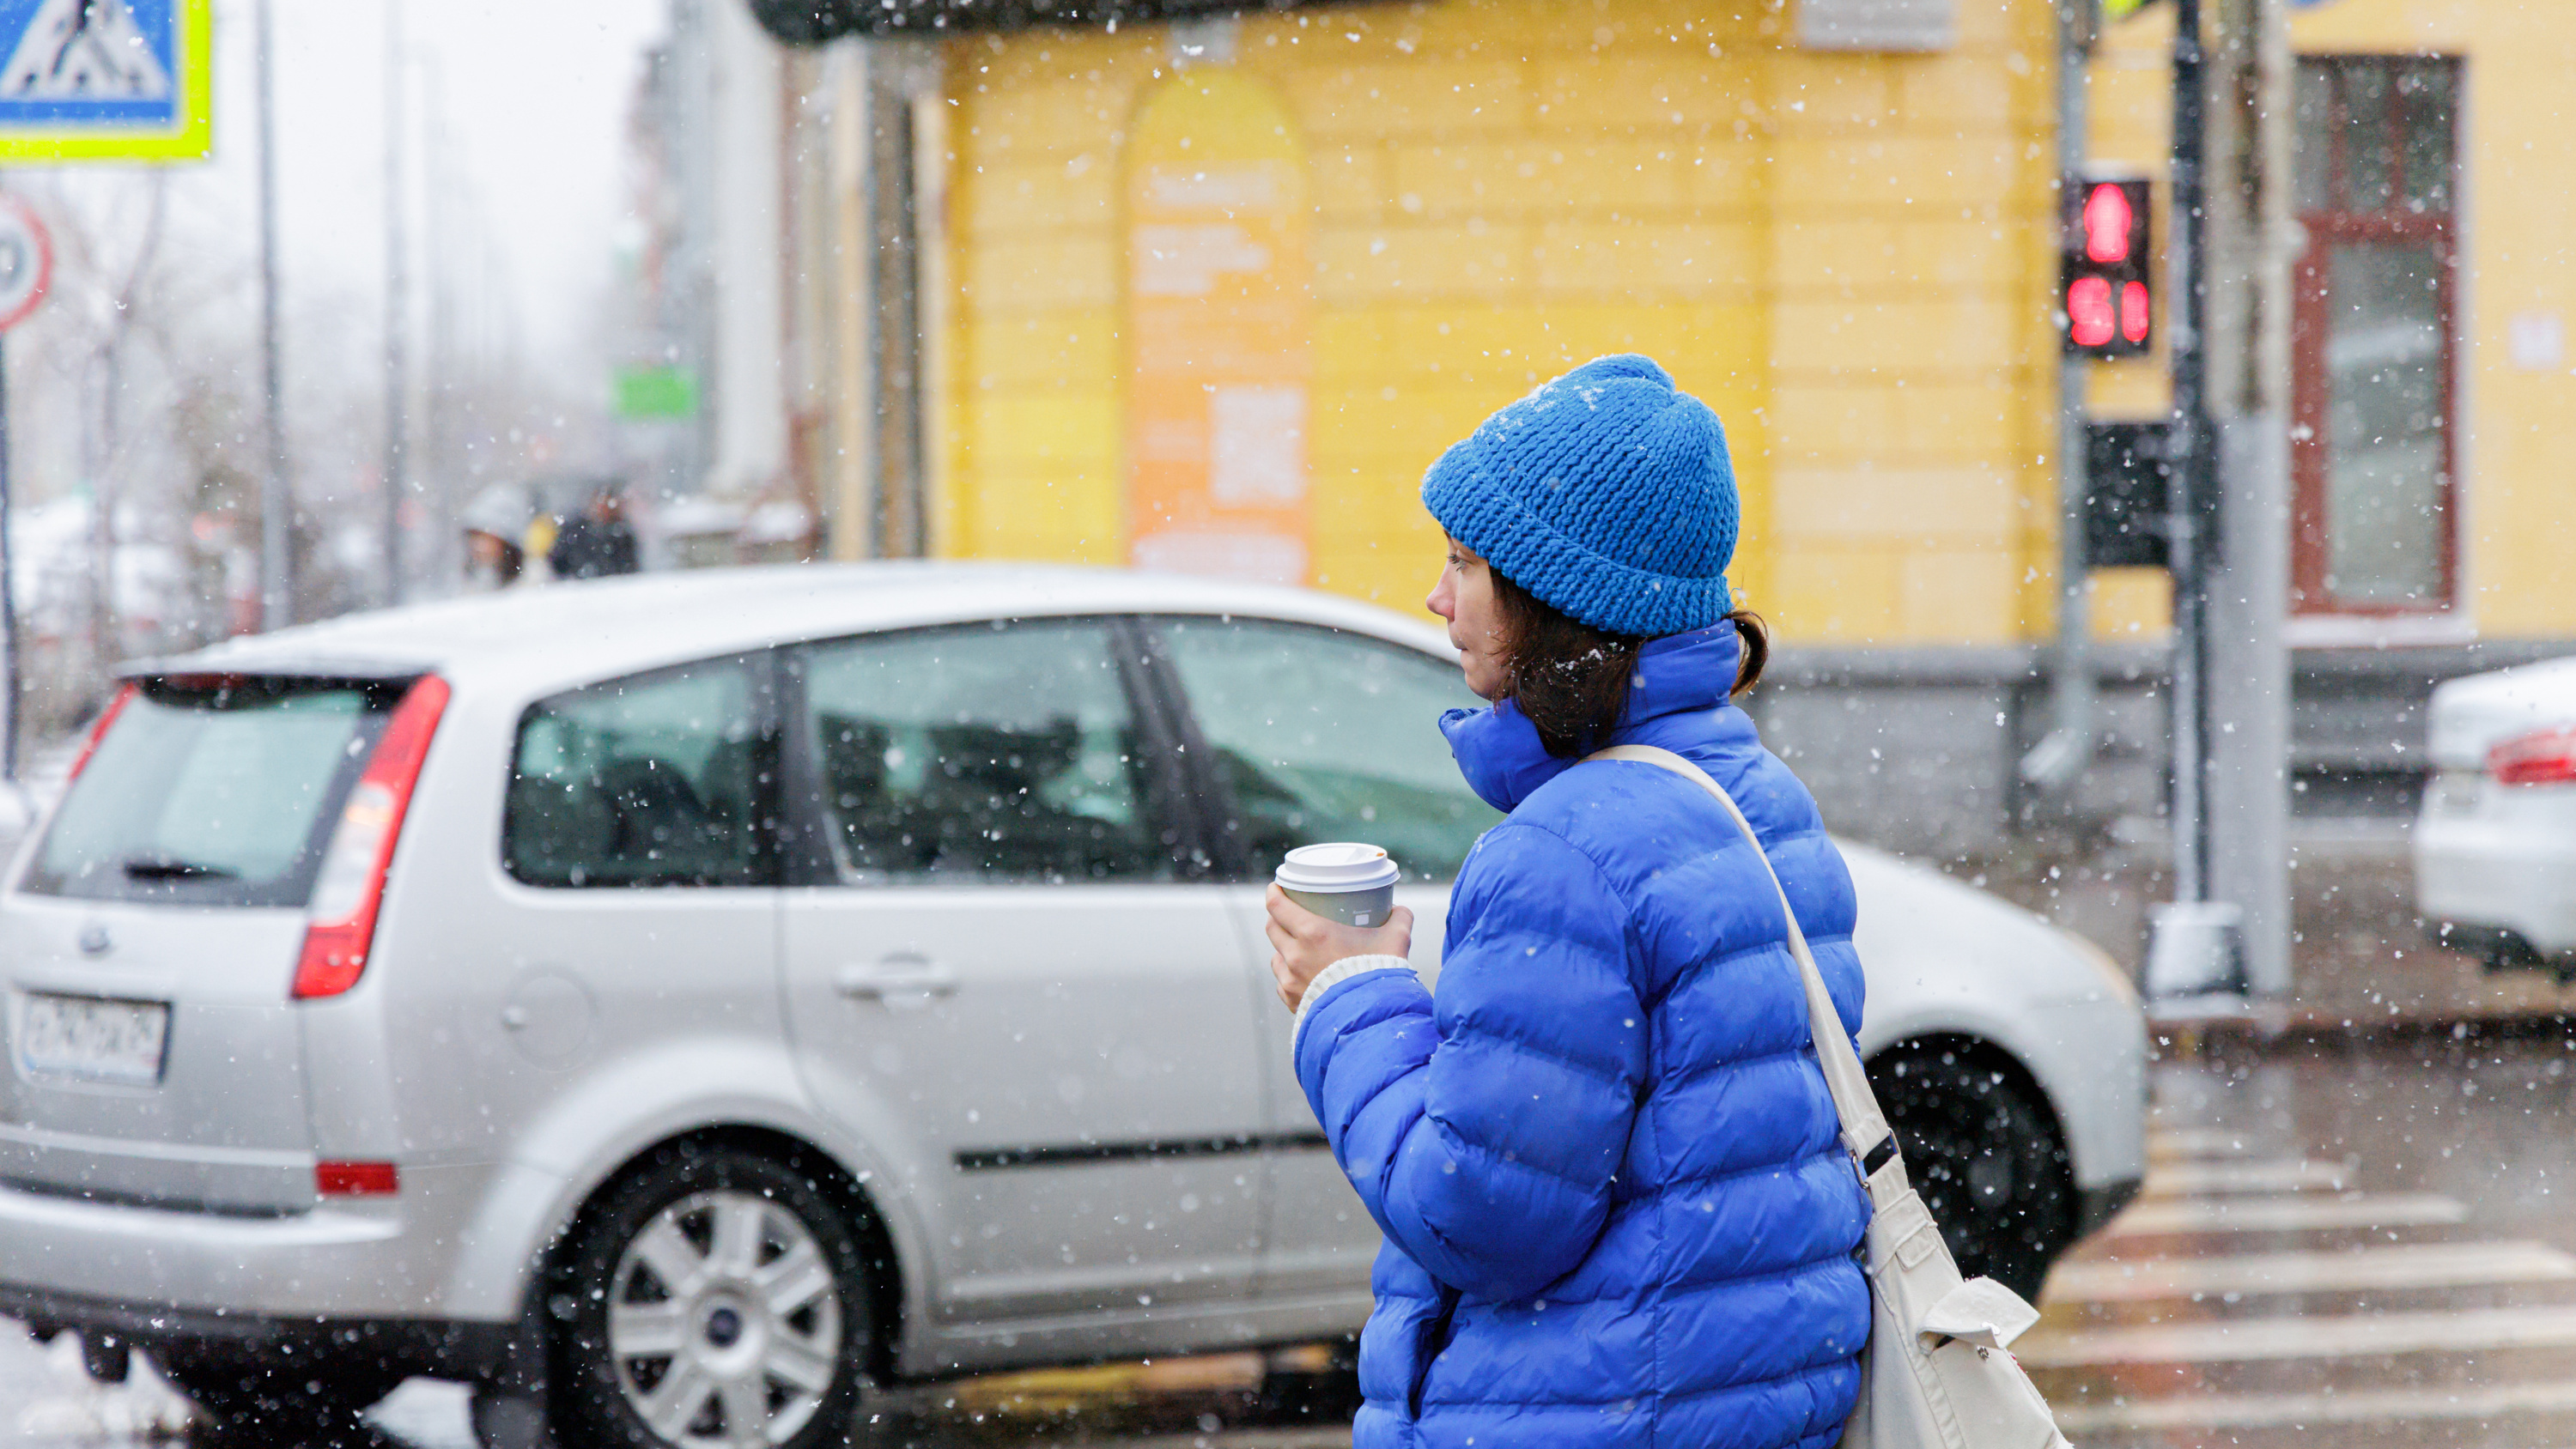 Ждем потепления или холодов? Читаем прогноз погоды в Красноярске